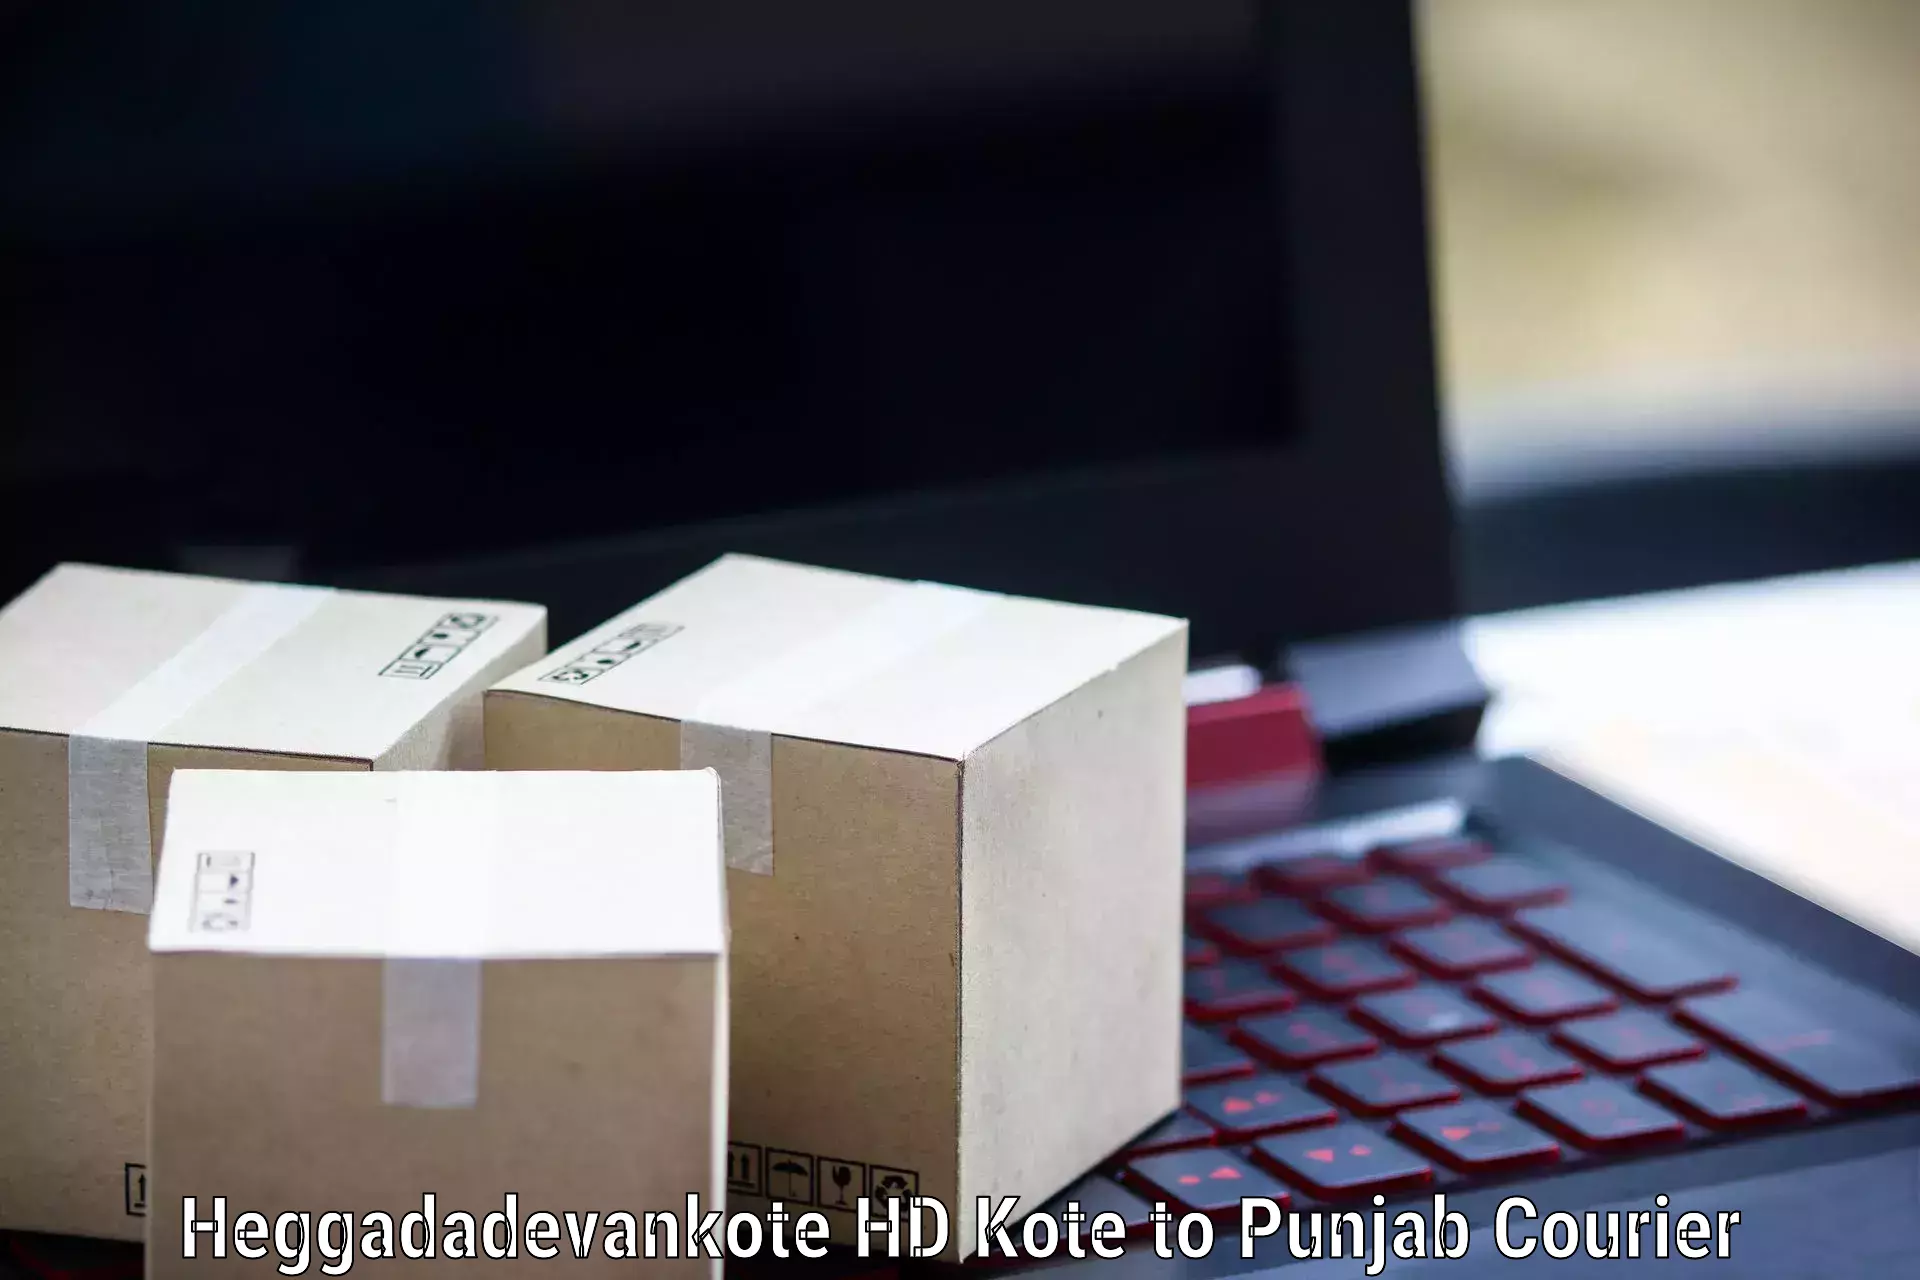 Express mail solutions Heggadadevankote HD Kote to Punjab